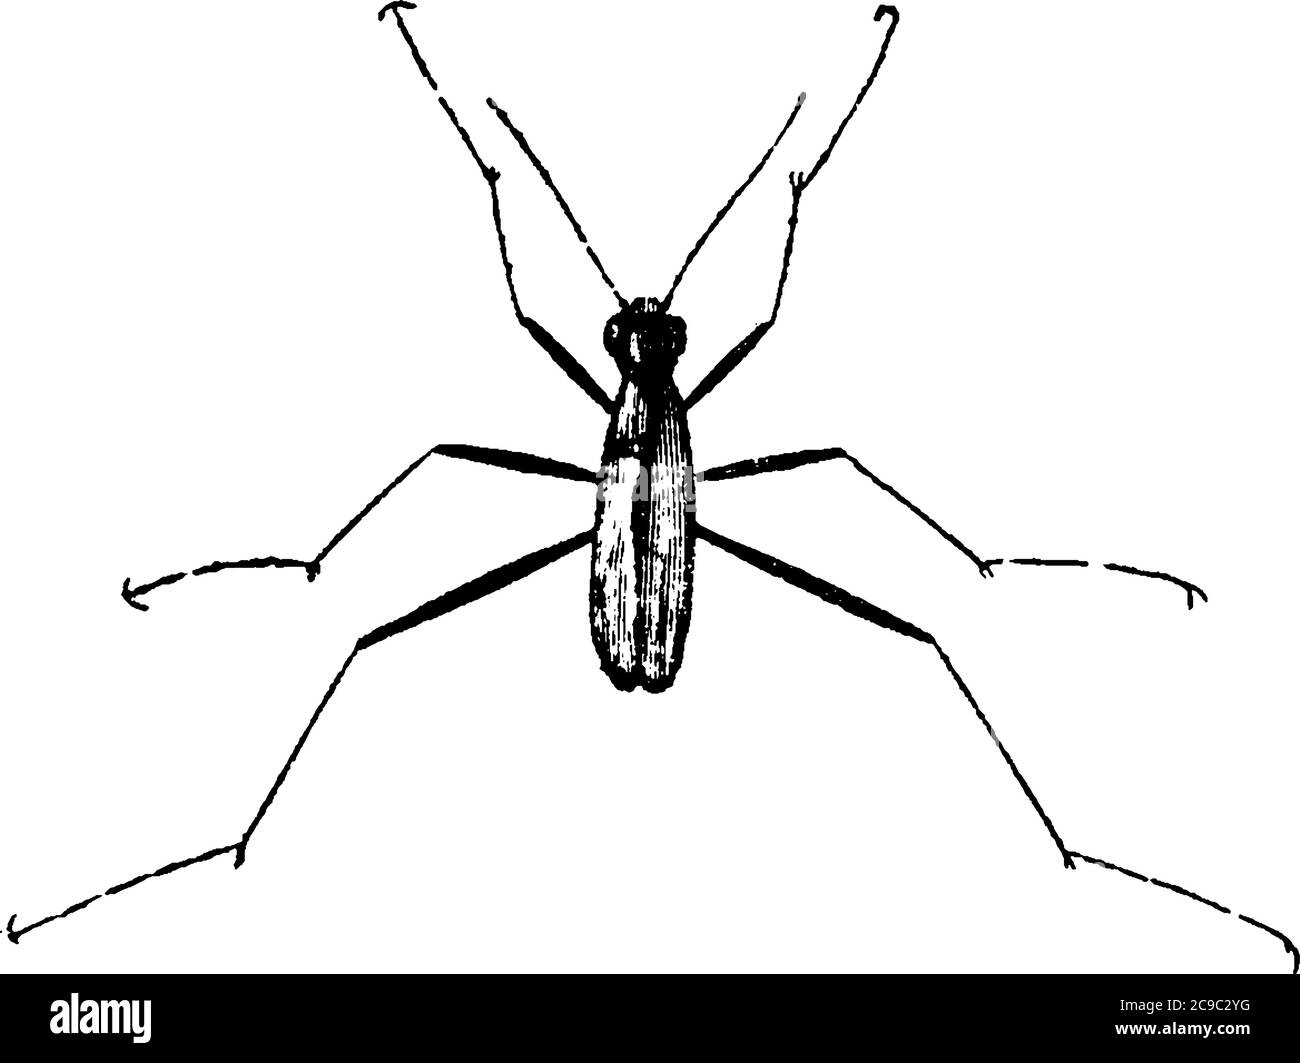 Représentation typique d'un insecte, le coléoptère du tigre, qui a des yeux renflés et des jambes minces, un dessin de ligne vintage ou une illustration de gravure. Illustration de Vecteur